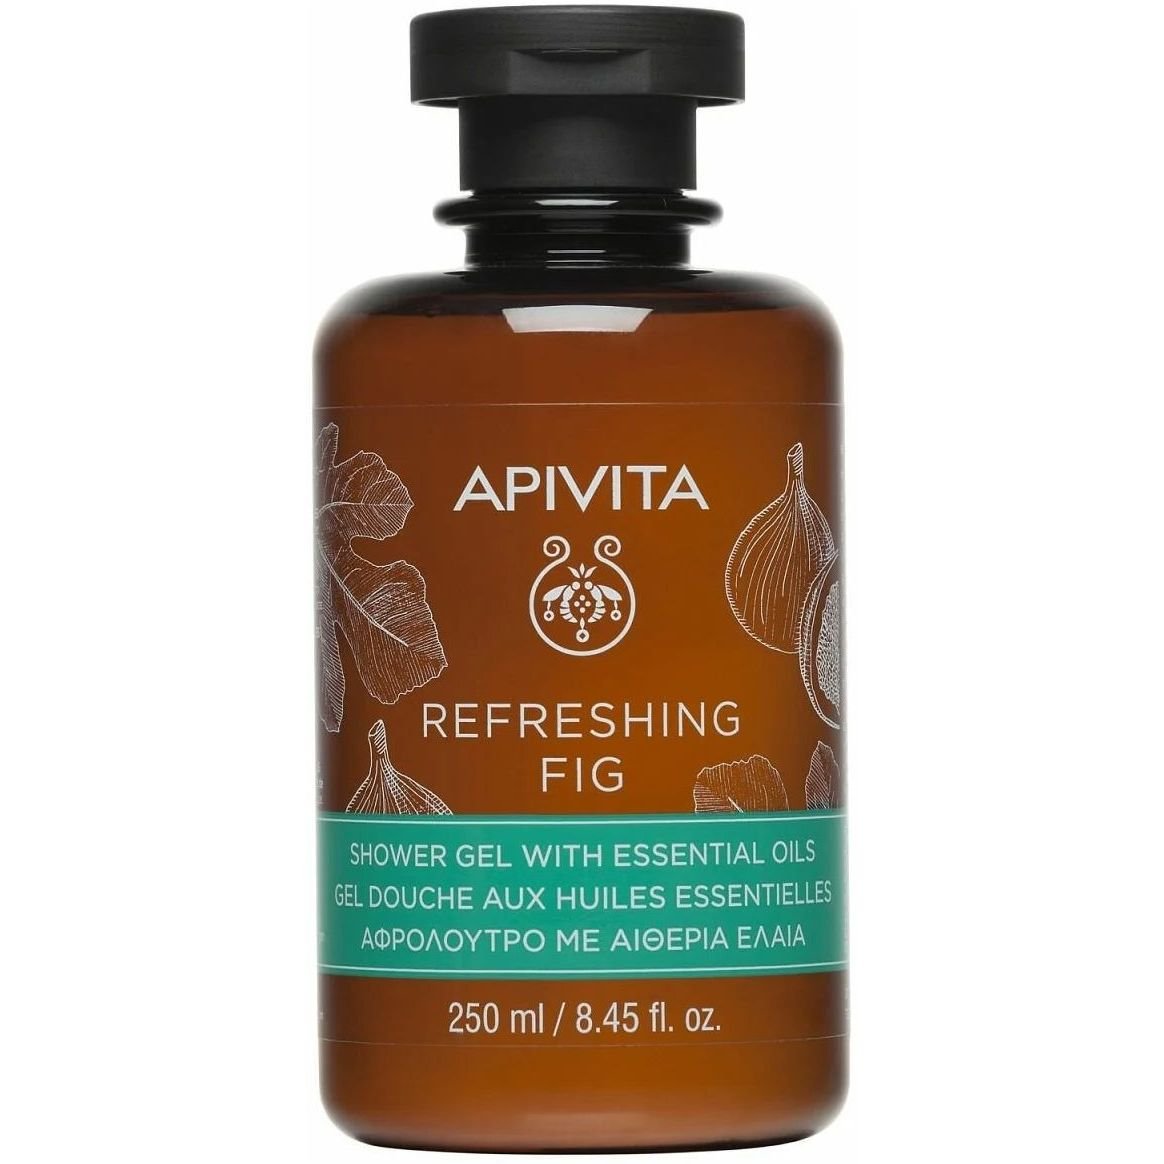 Гель для душа Apivita Refreshing Fig с эфирными маслами, 250 мл - фото 1